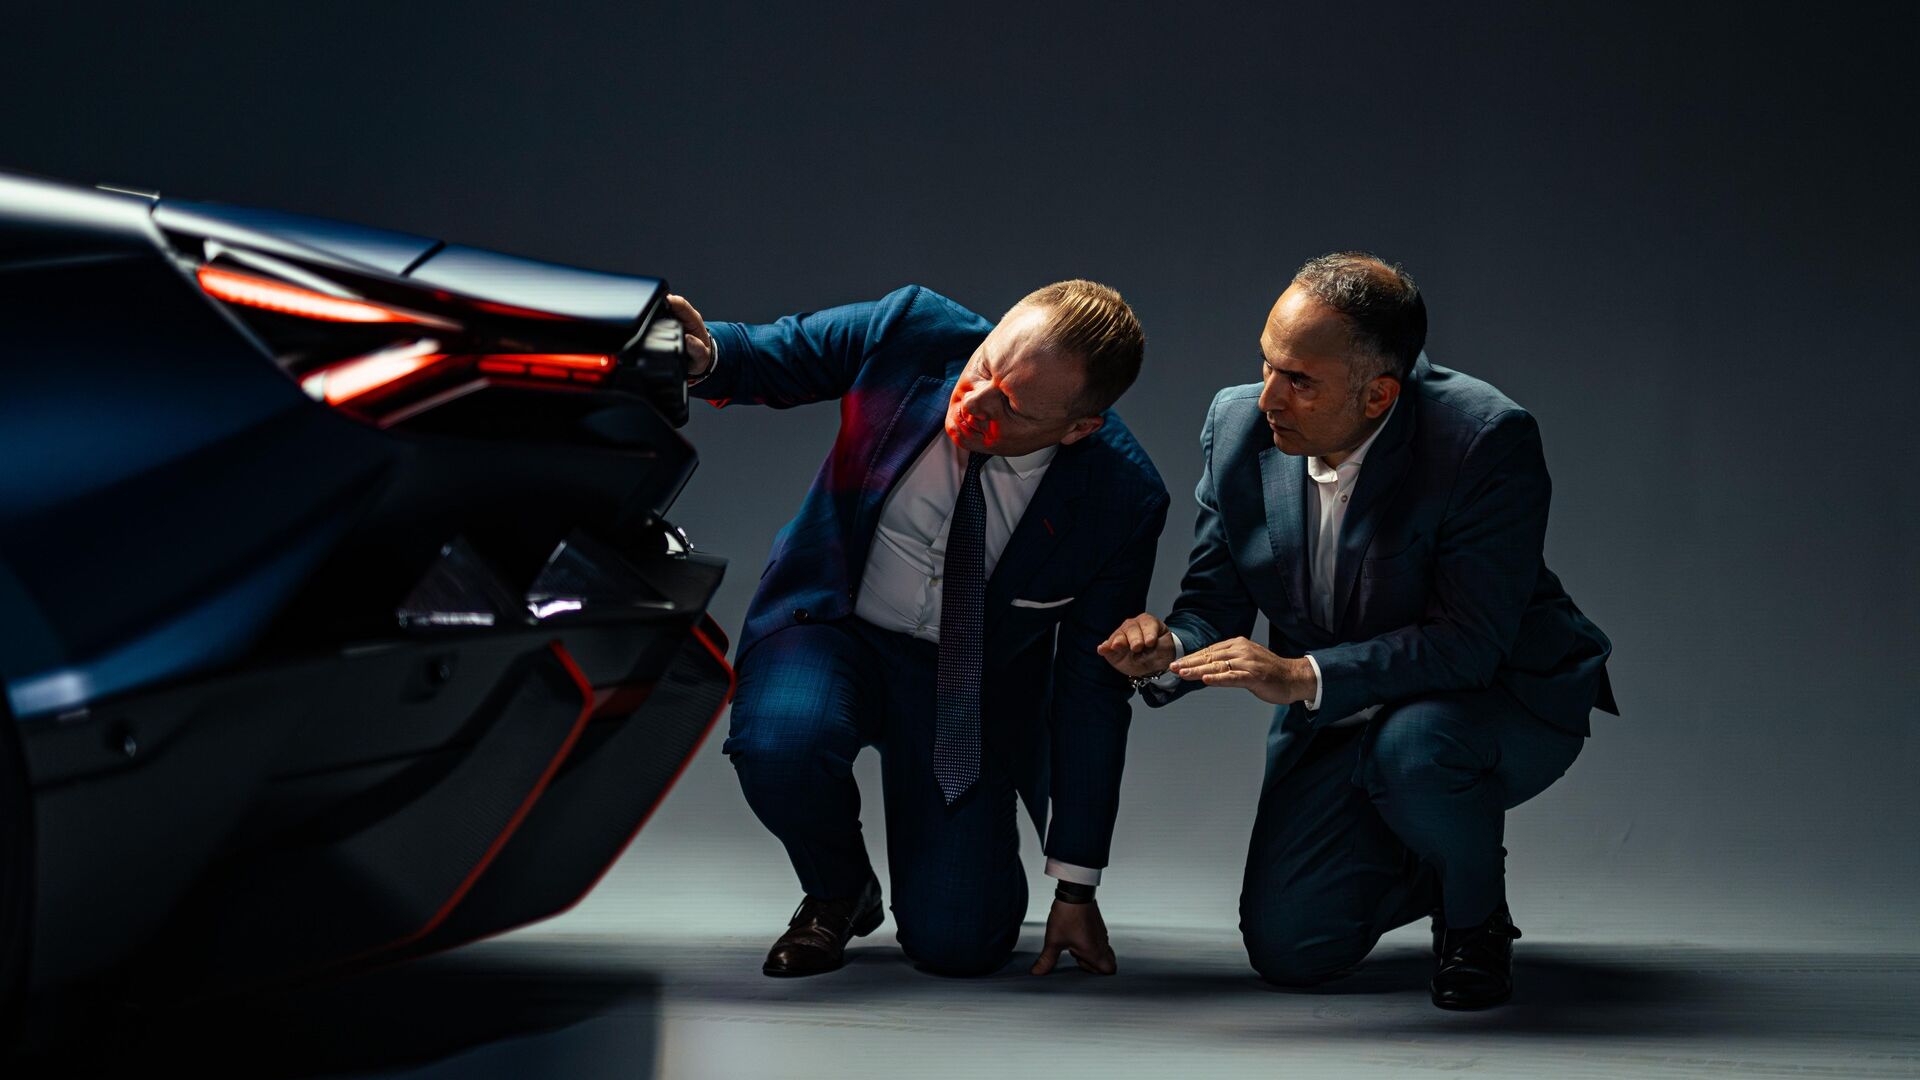 Dizayn və aerodinamika: Automobili Lamborghini-dən Mitja Borkert və Uqo Riccio